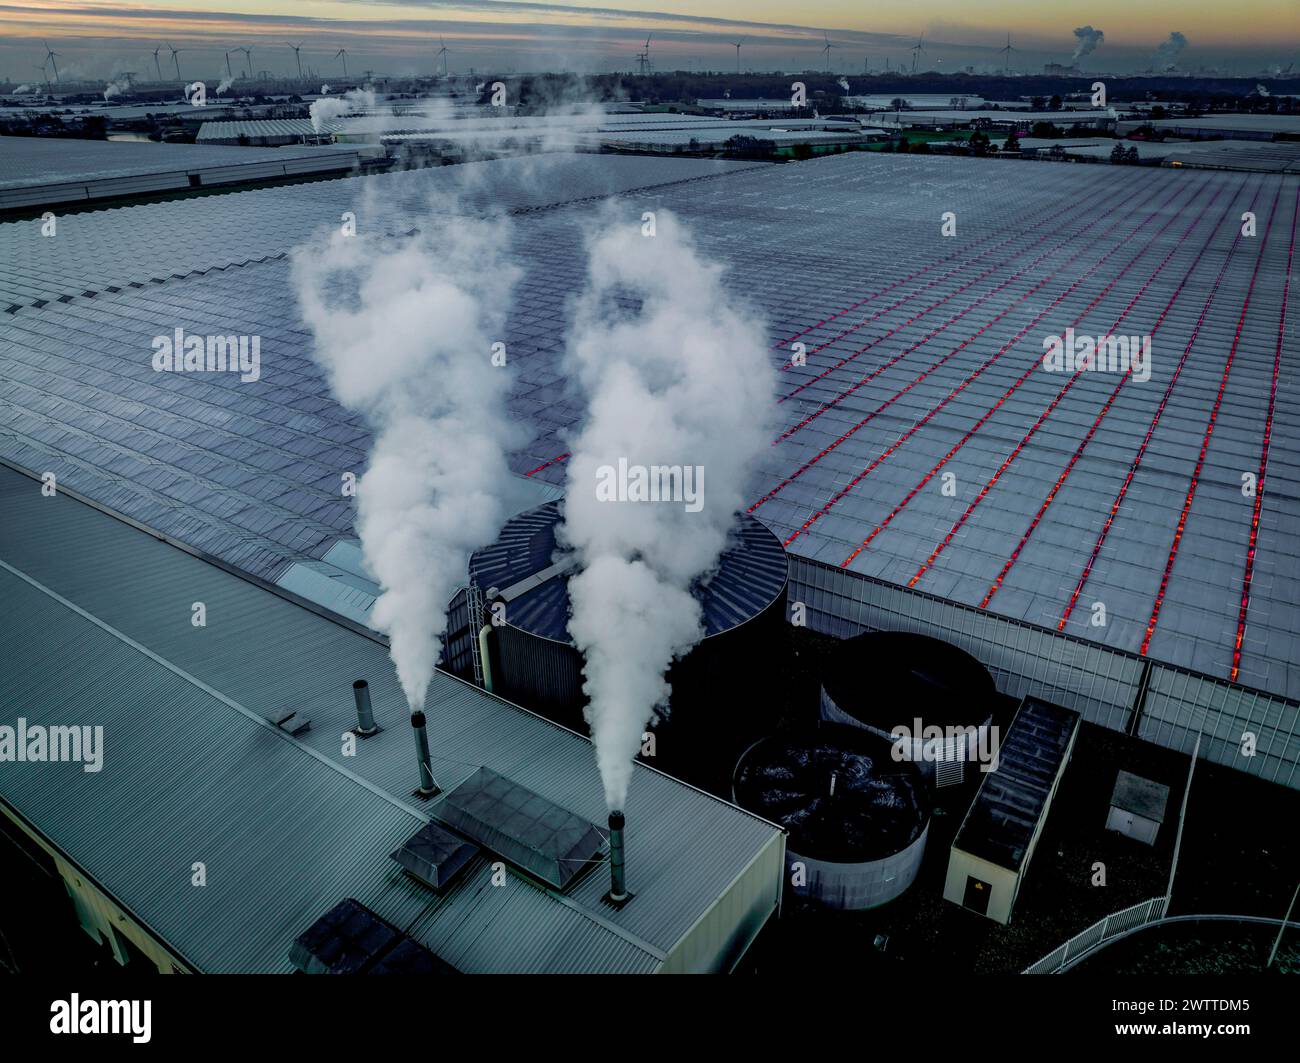 Industrial facility emitting smoke at dusk Stock Photo